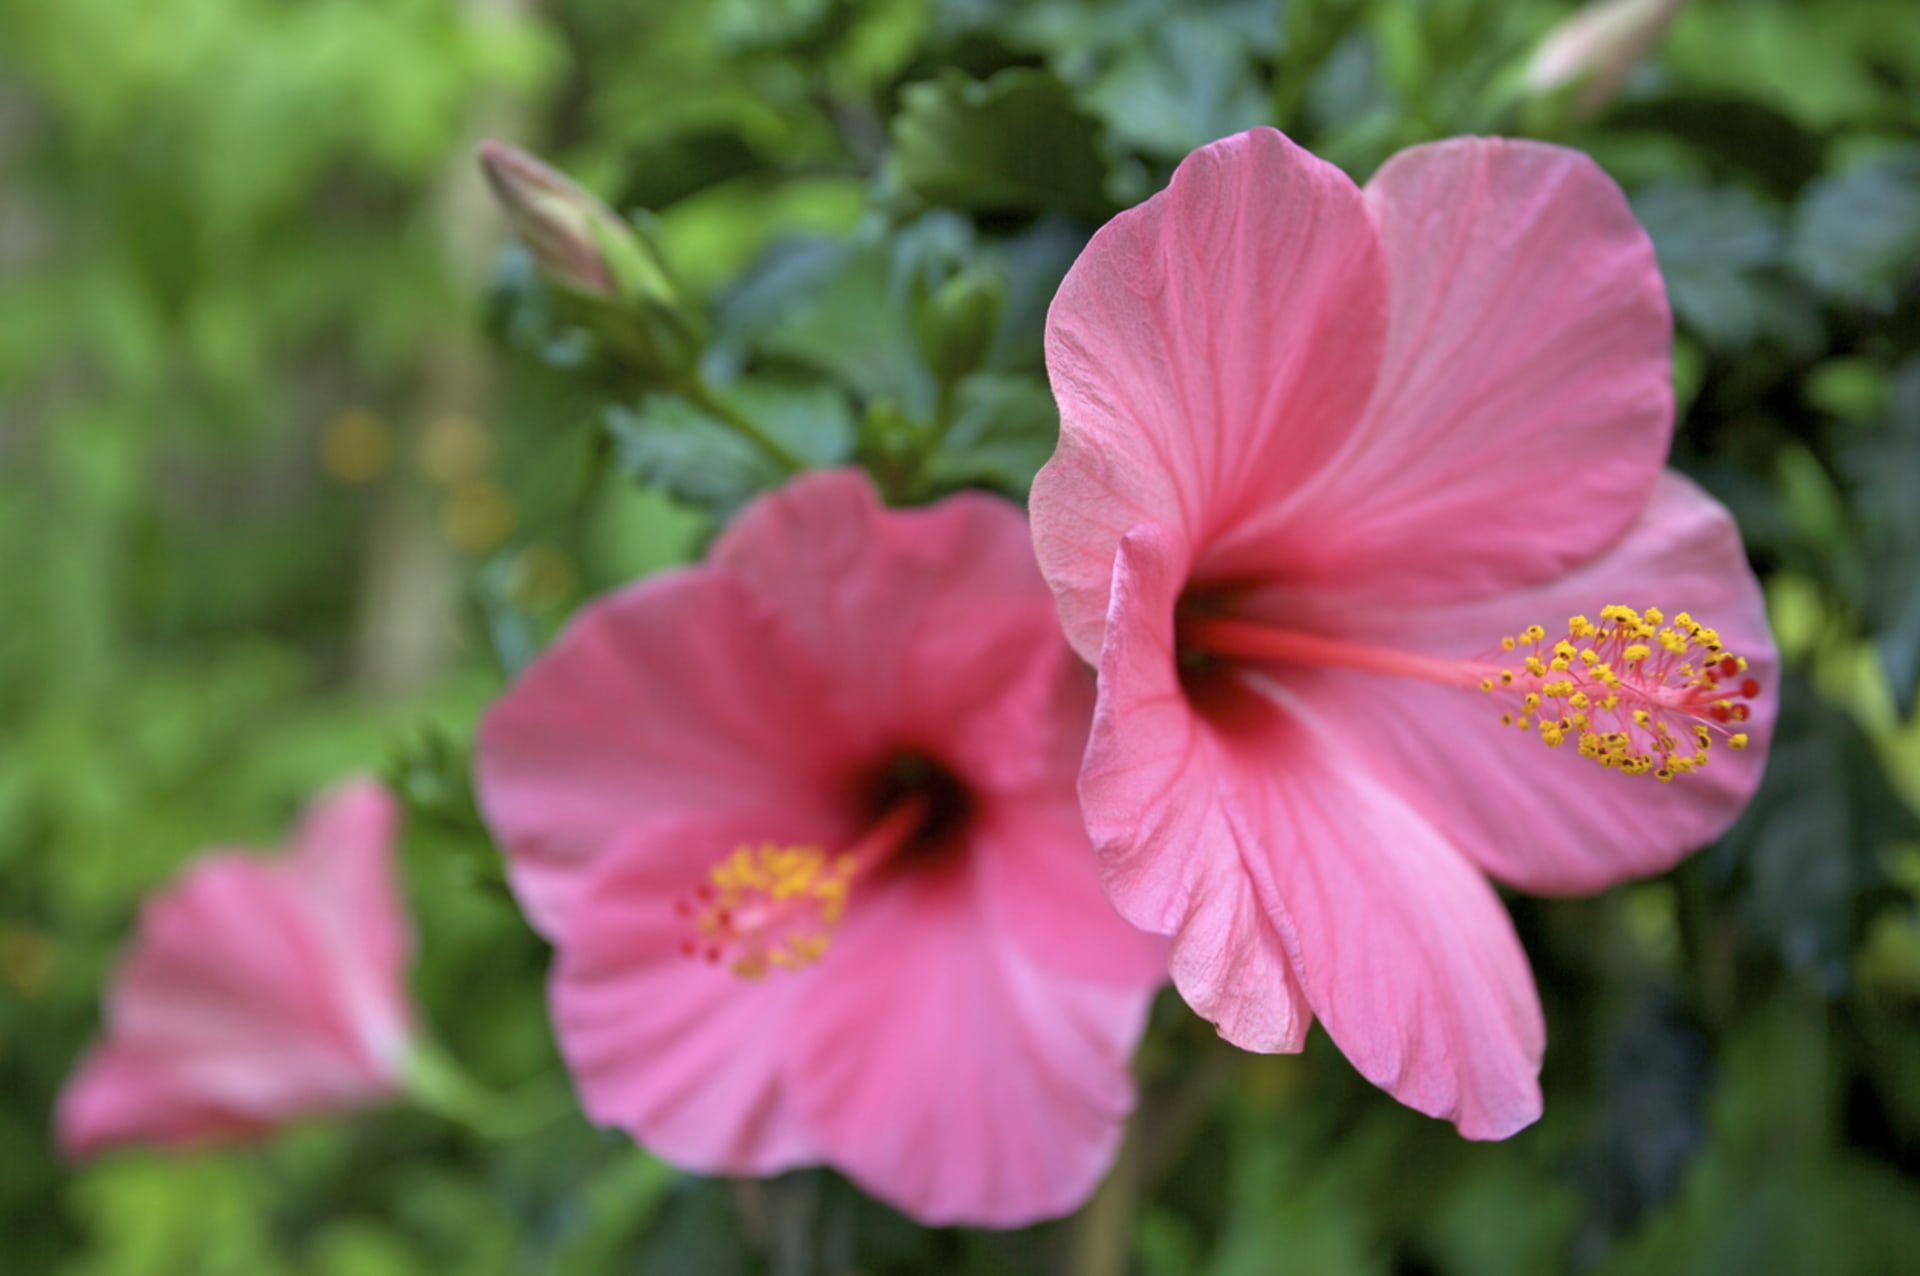 Ibišek čínský (Hibiscus rosa-senensis) je atraktivní pokojová květina s velkými květy, které mohou být v různých odstínech červené, růžové, oranžové, žluté i bílé. Ibišku se v bytě daří velmi dobře a nadělá doma spoustu parády